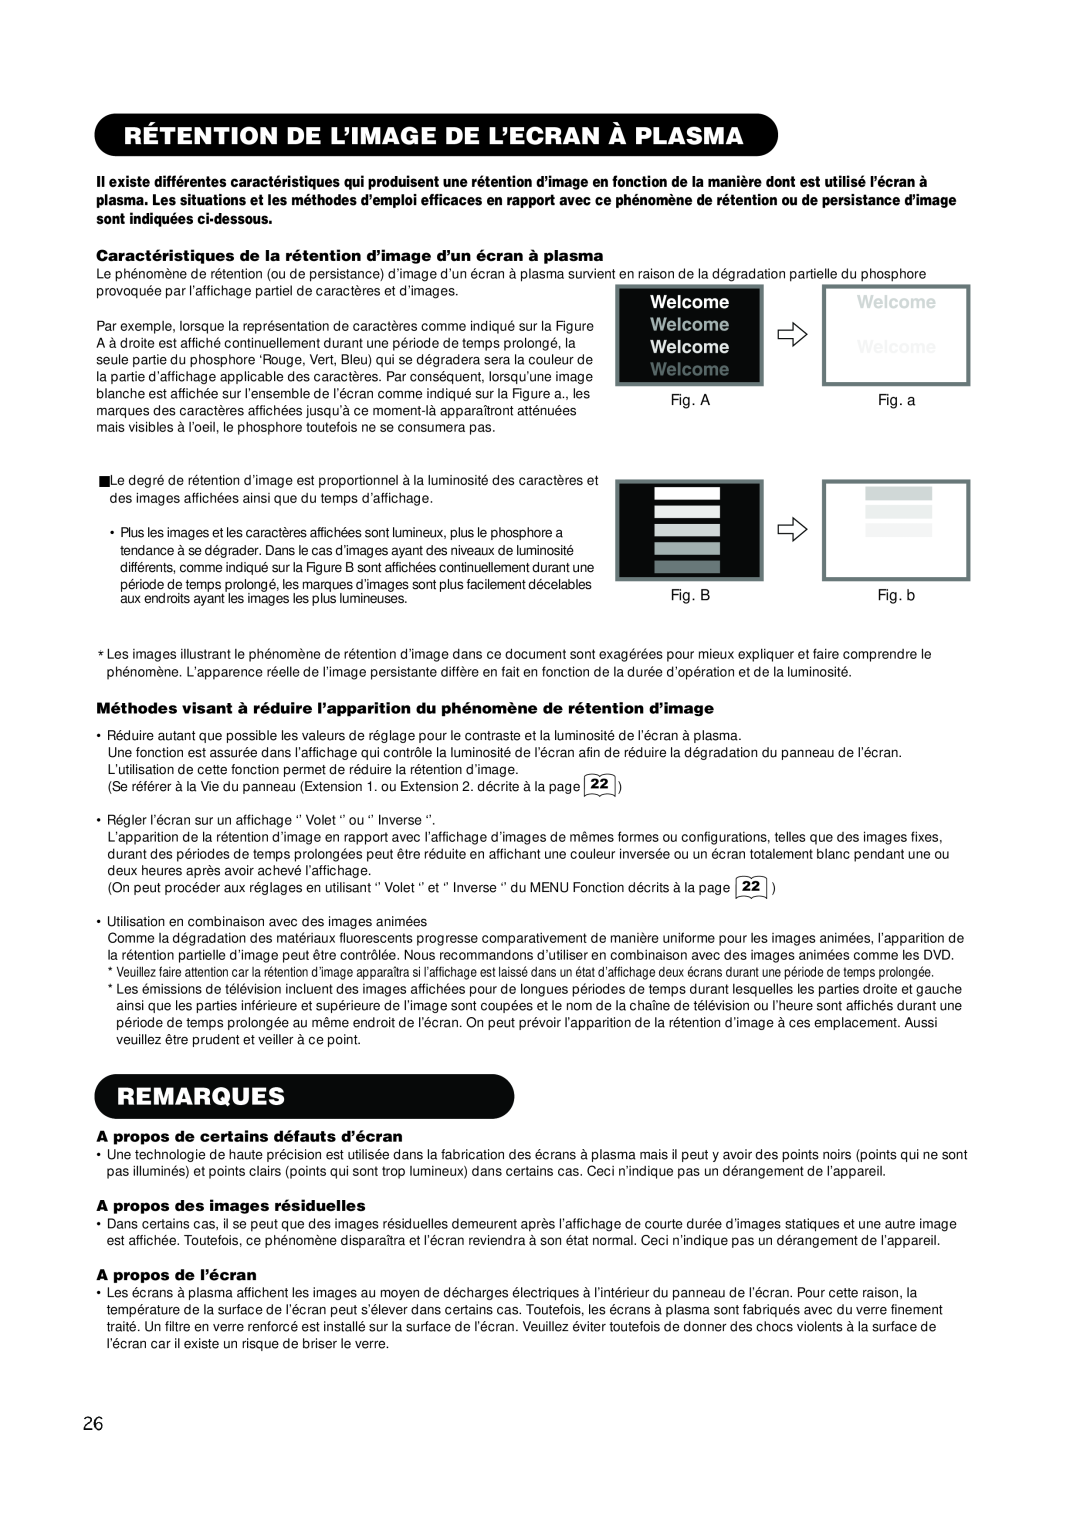 Hitachi PW1A user manual Rétention De L’Image De L’Ecran À Plasma, Remarques, A propos de certains défauts d’écran 